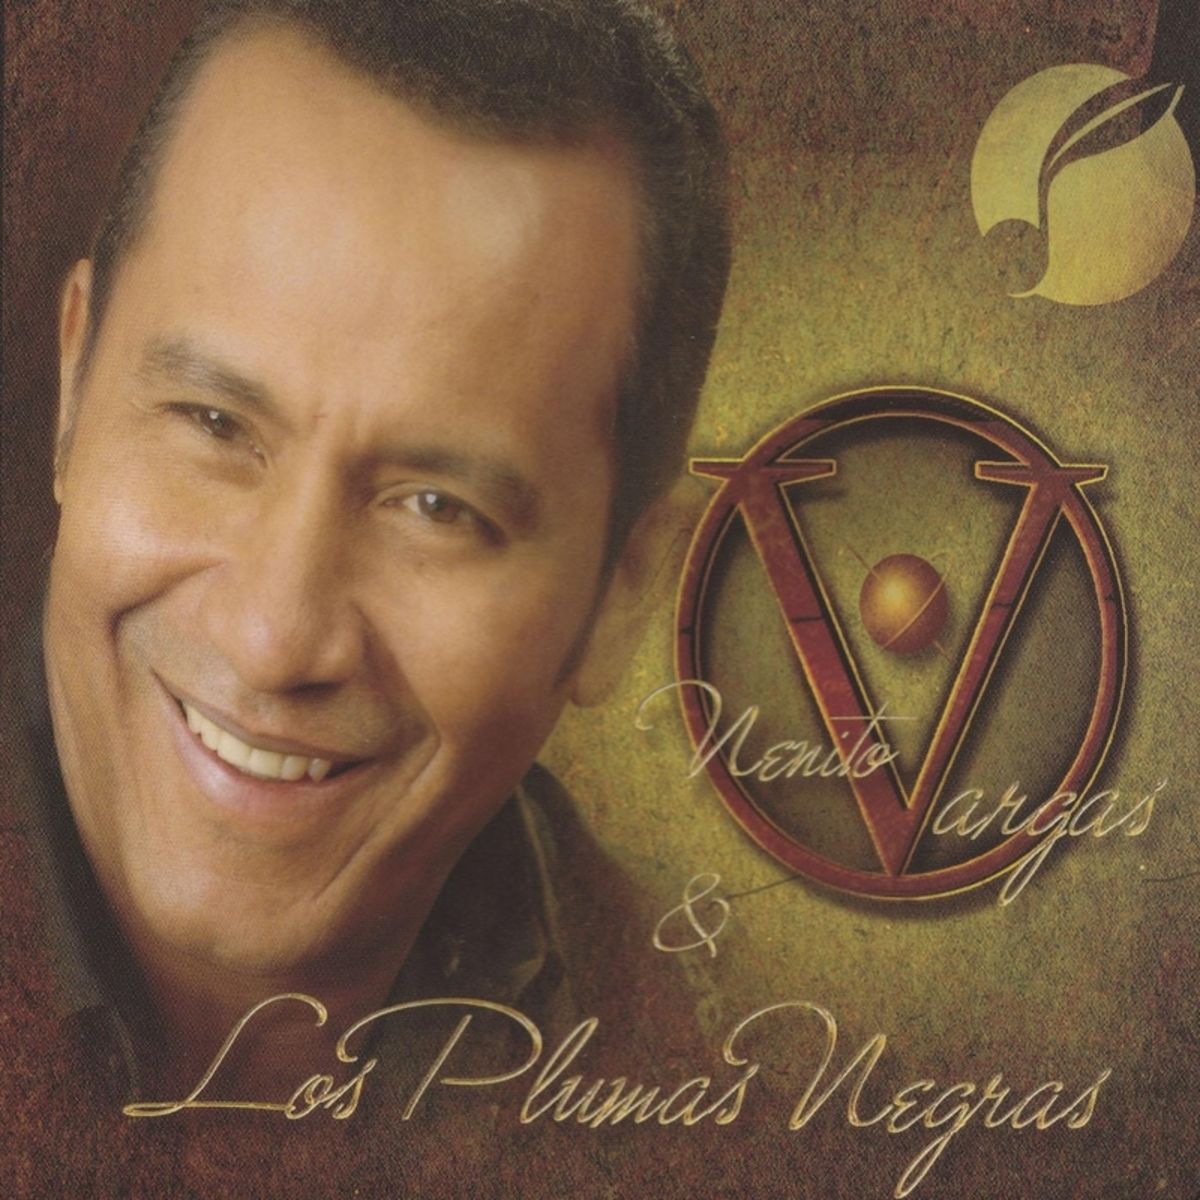 8 - Nenito Vargas y los Plumas Negras - Tu Me Sabes Amar.mp3